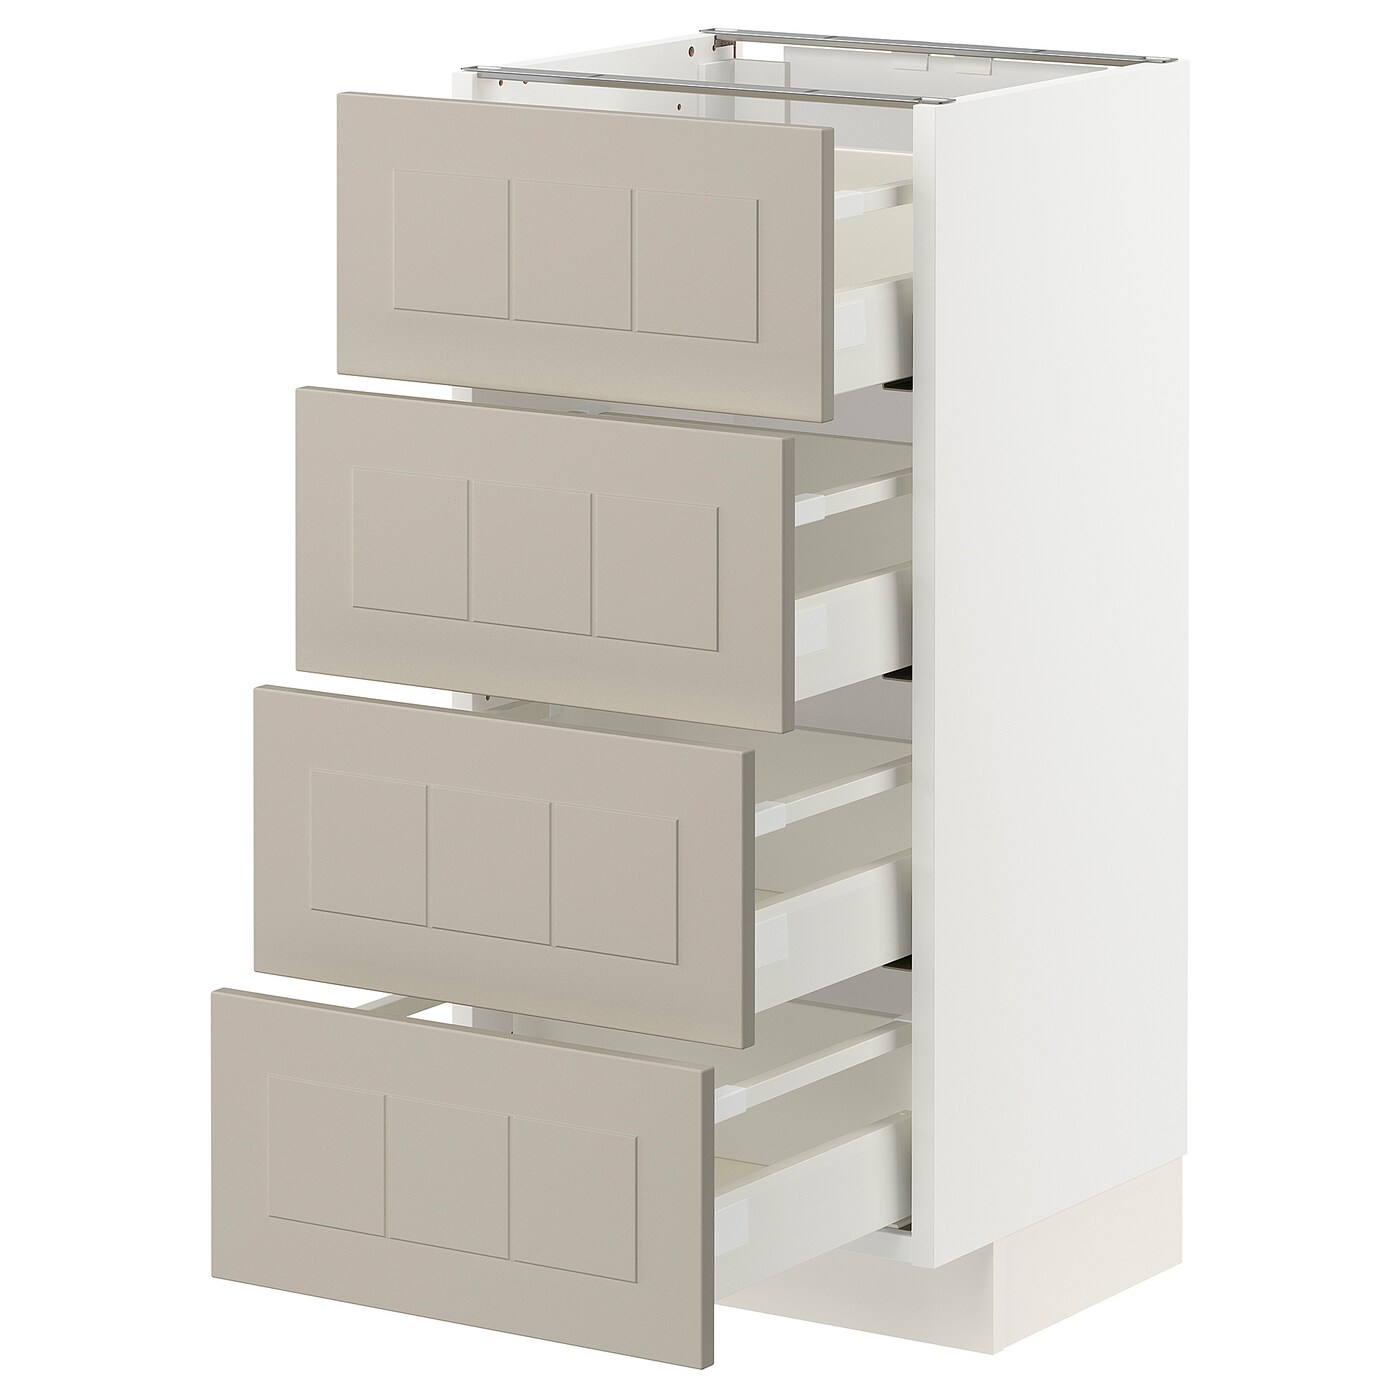 Напольный кухонный шкаф  - IKEA METOD MAXIMERA, 88x39,5x40см, белый/бежевый, МЕТОД МАКСИМЕРА ИКЕА